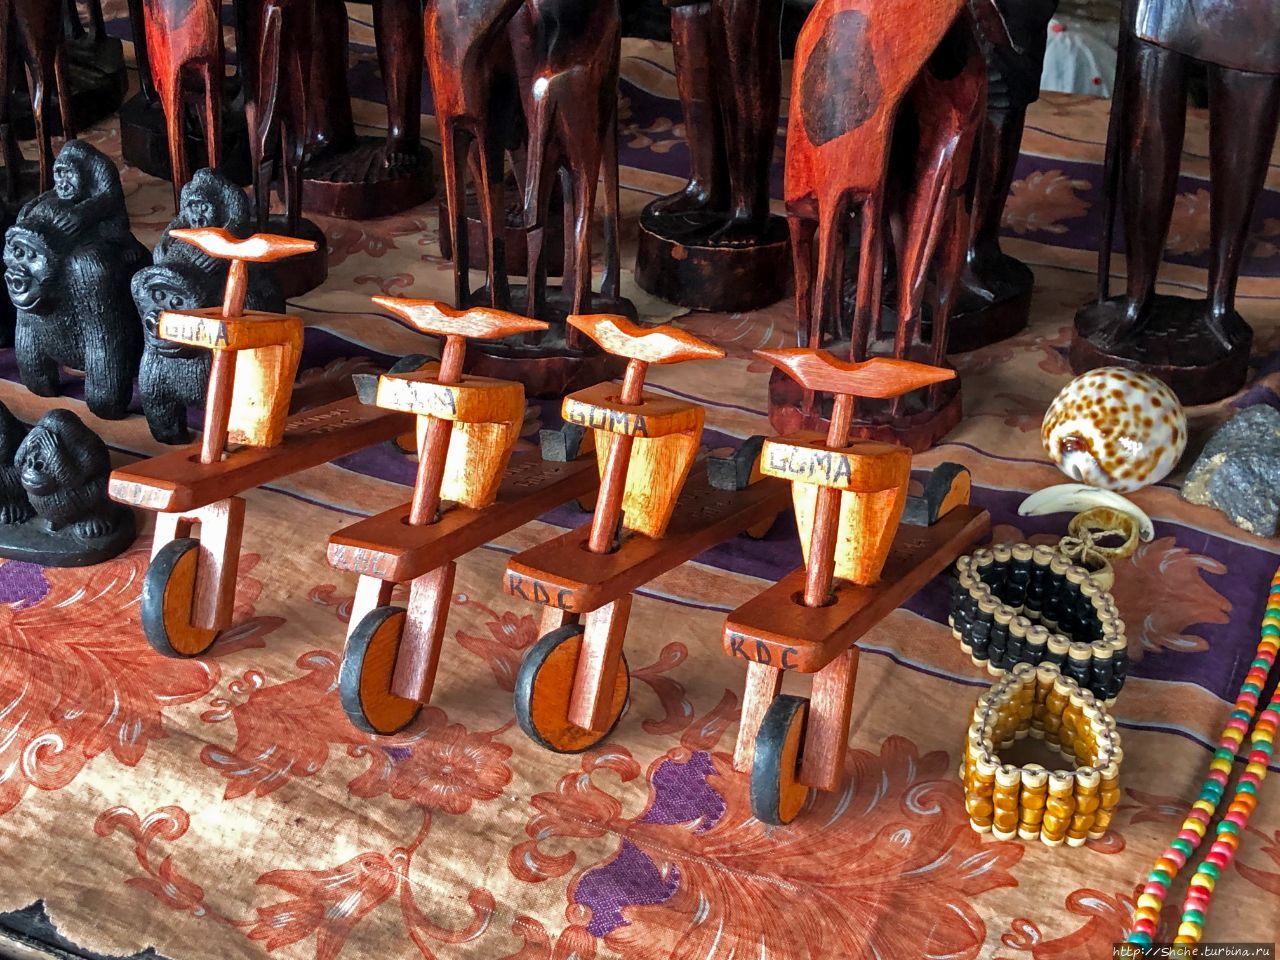 Рынок искусства и сувениров Гома, ДР Конго